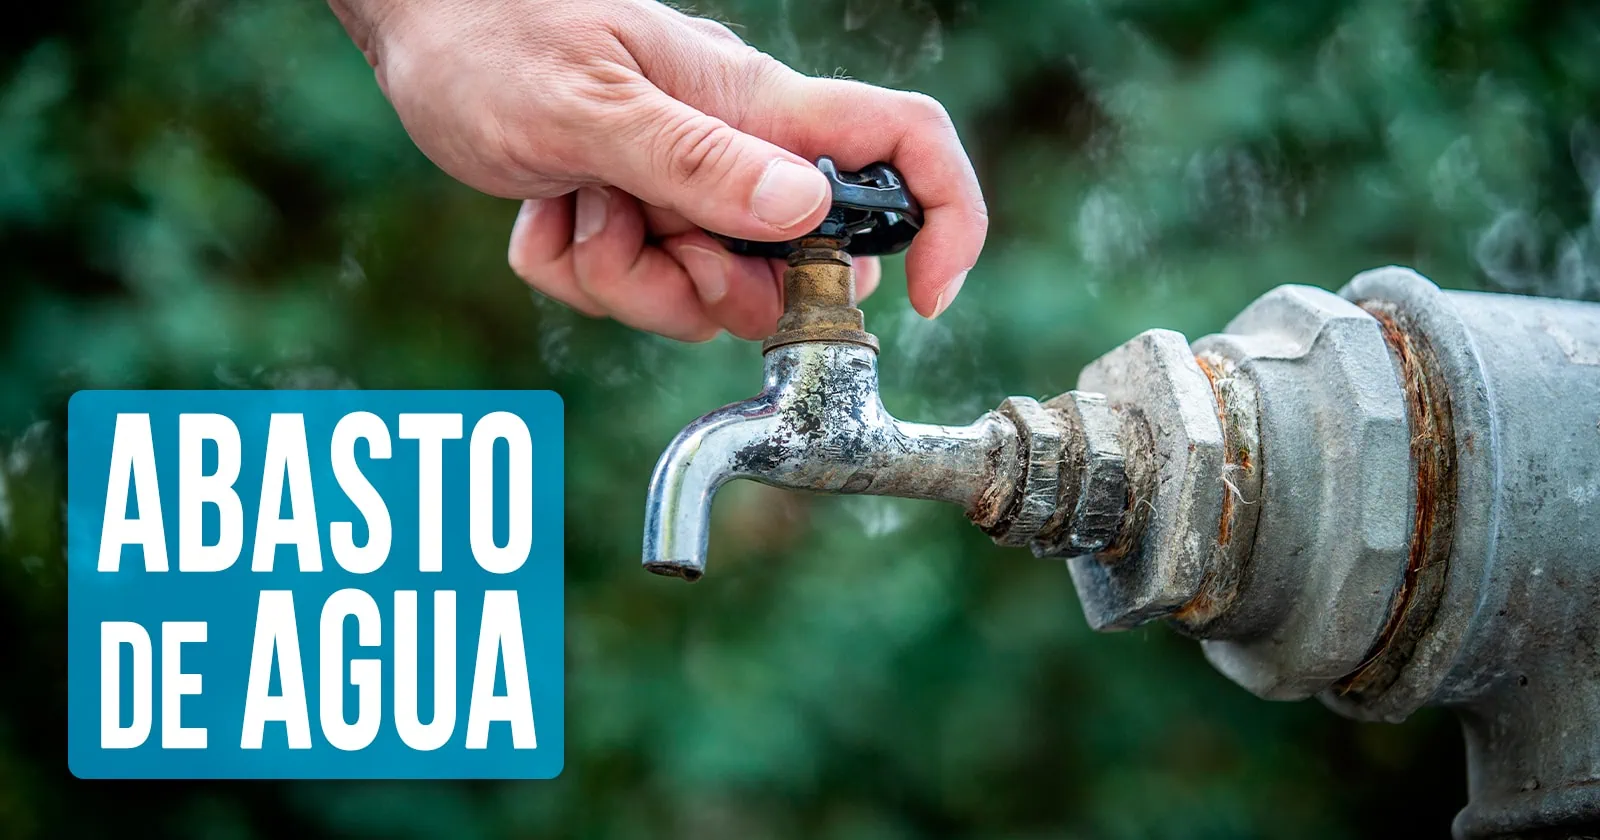 Abasto de Agua se Interrumpira Temporalmente en Esta Ciudad Central Cubana